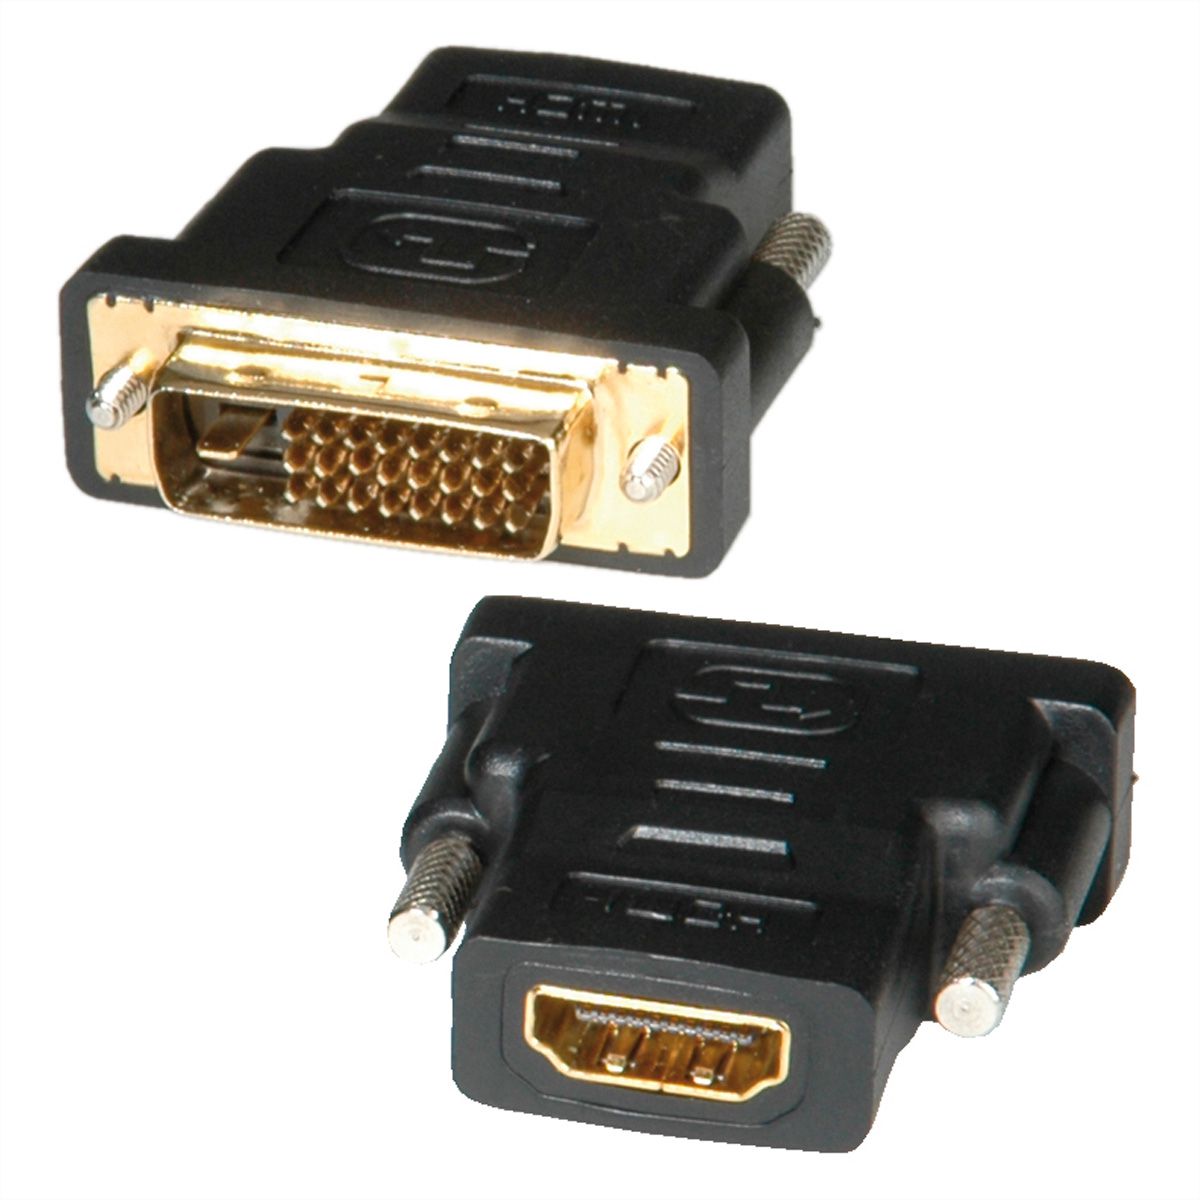 Adaptateur HDMI Femelle - DVI Mâle - Connectique PC 